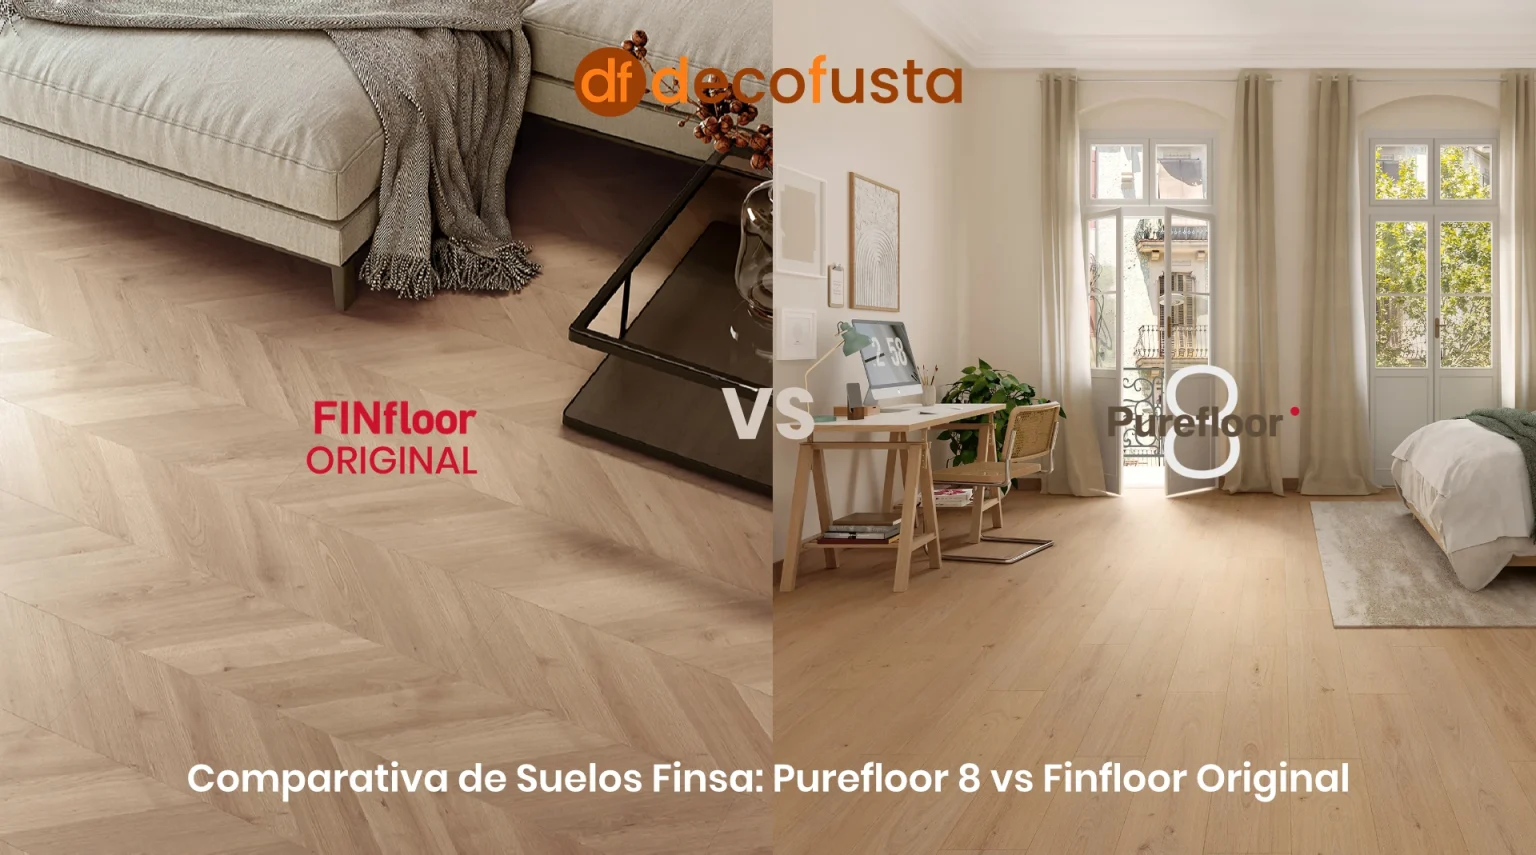 Comparativa de Suelos Finsa Purefloor 8 vs Finfloor Original